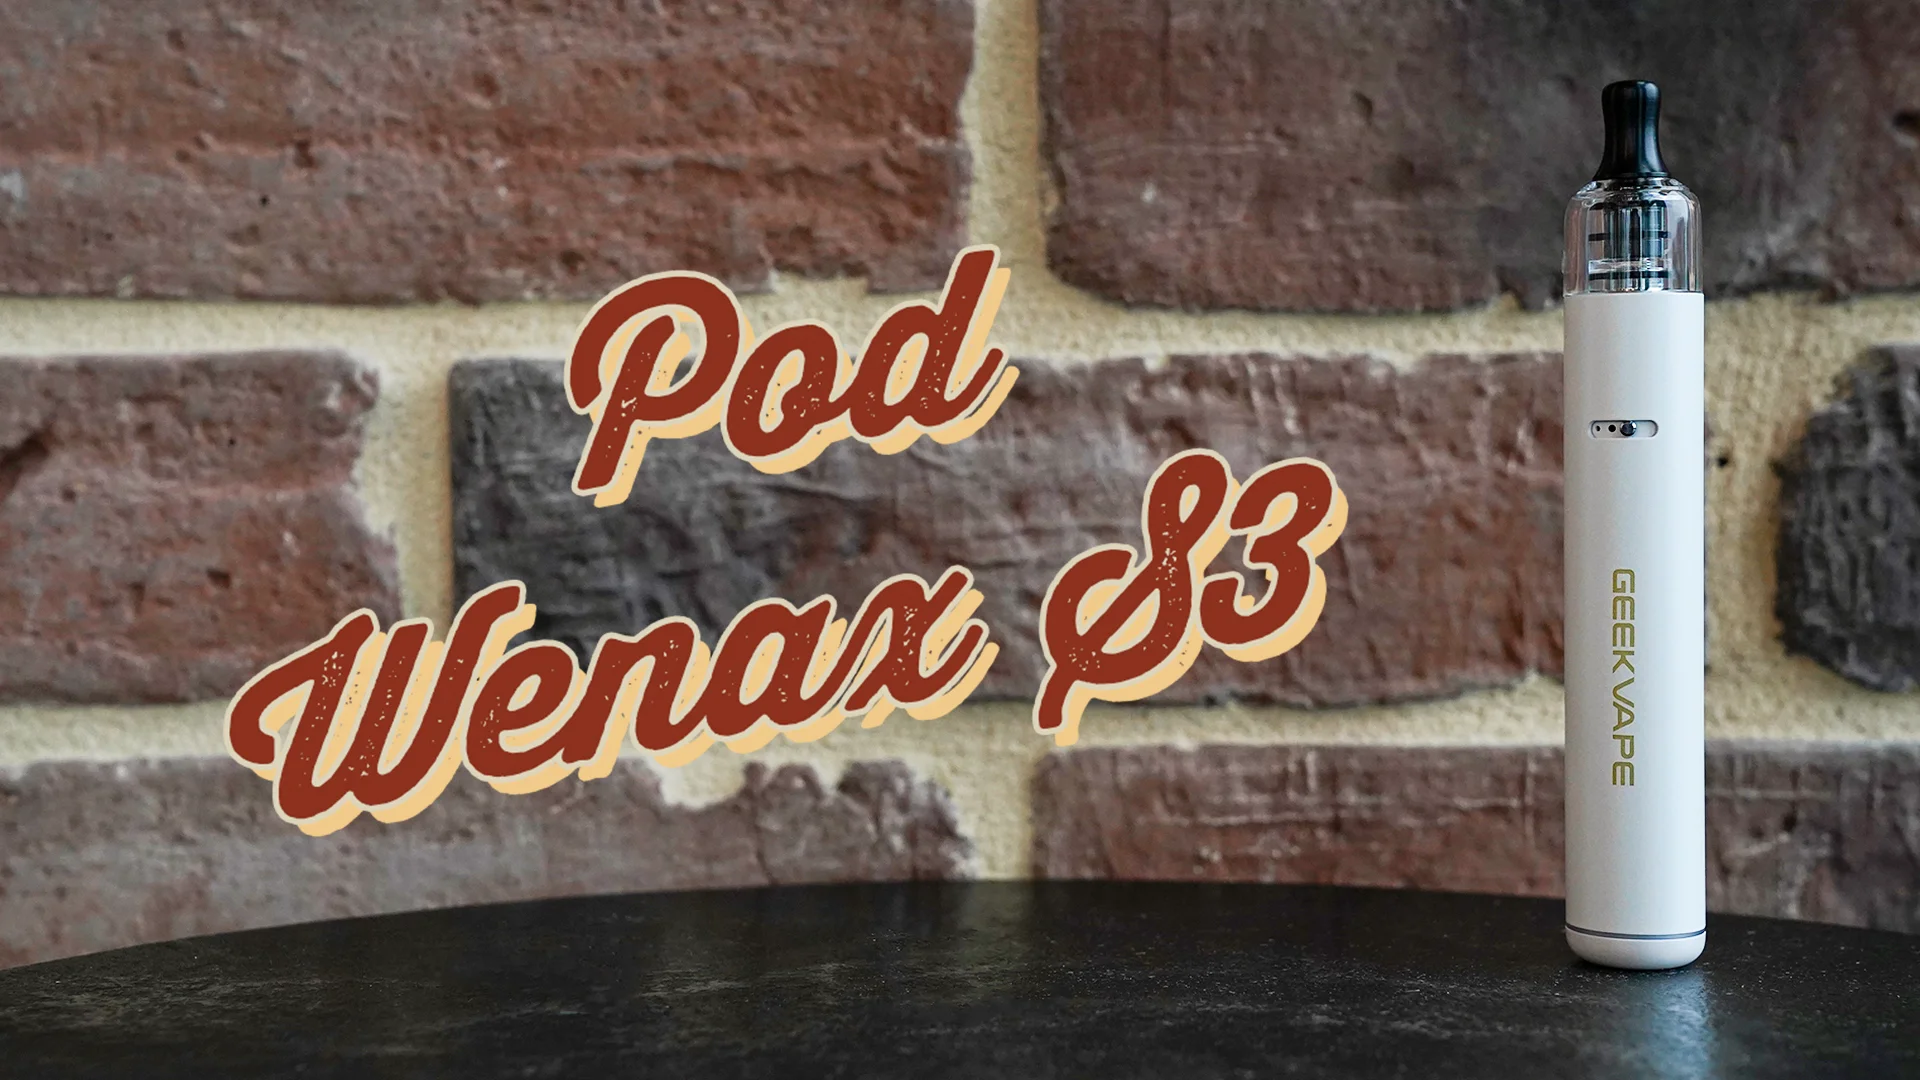 Pod Wenax S3 Geek Vape on Vimeo